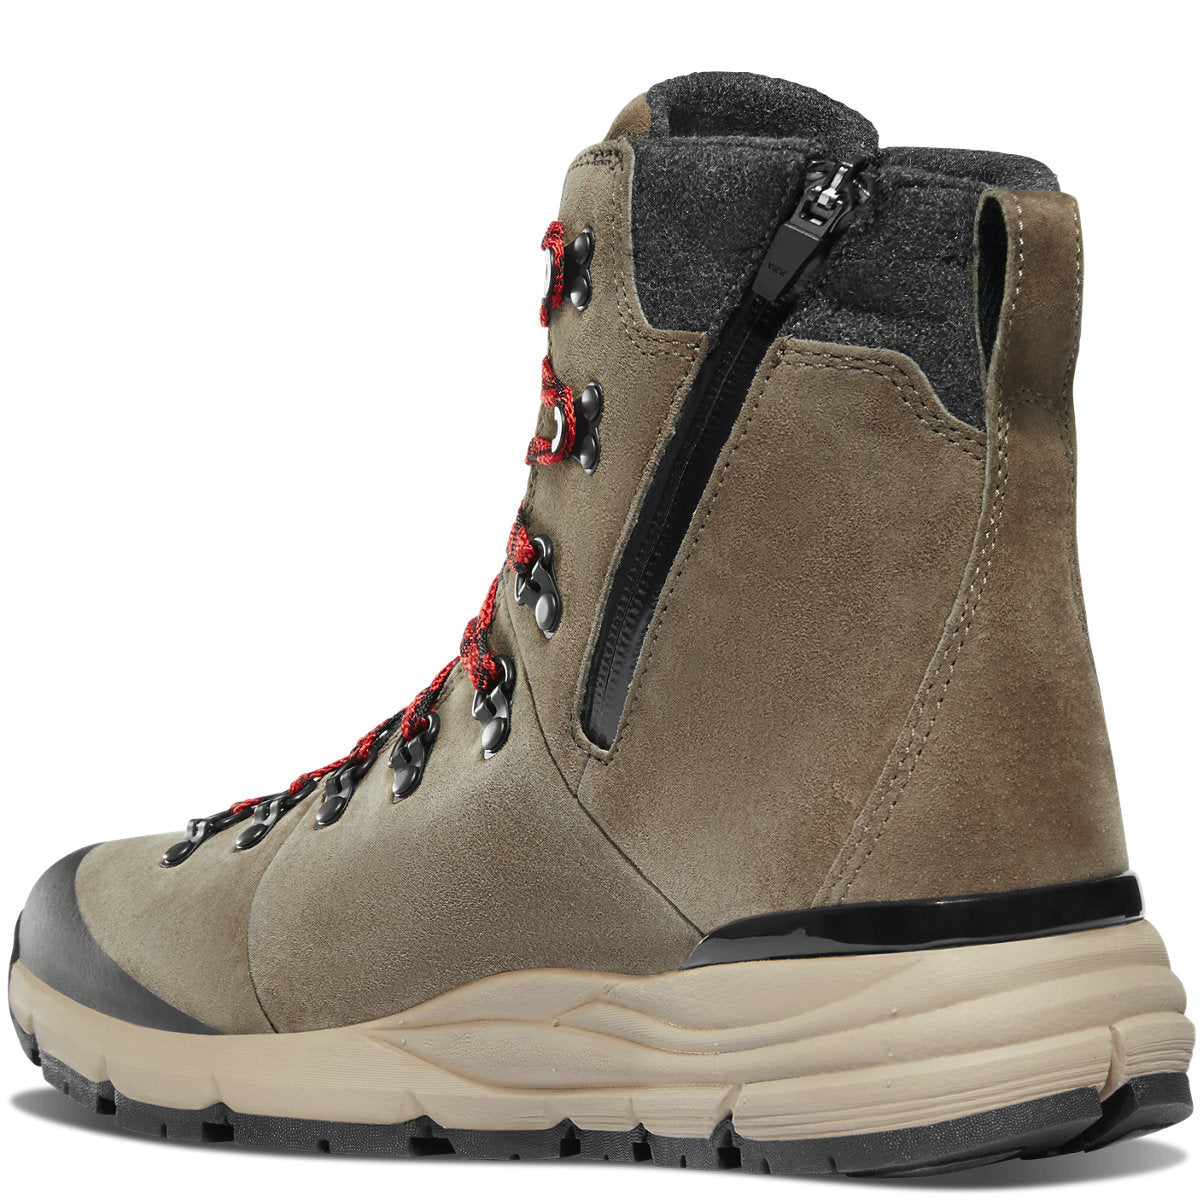 Danner Men's Arctic 600 Side-Zip 7" Winter Boots